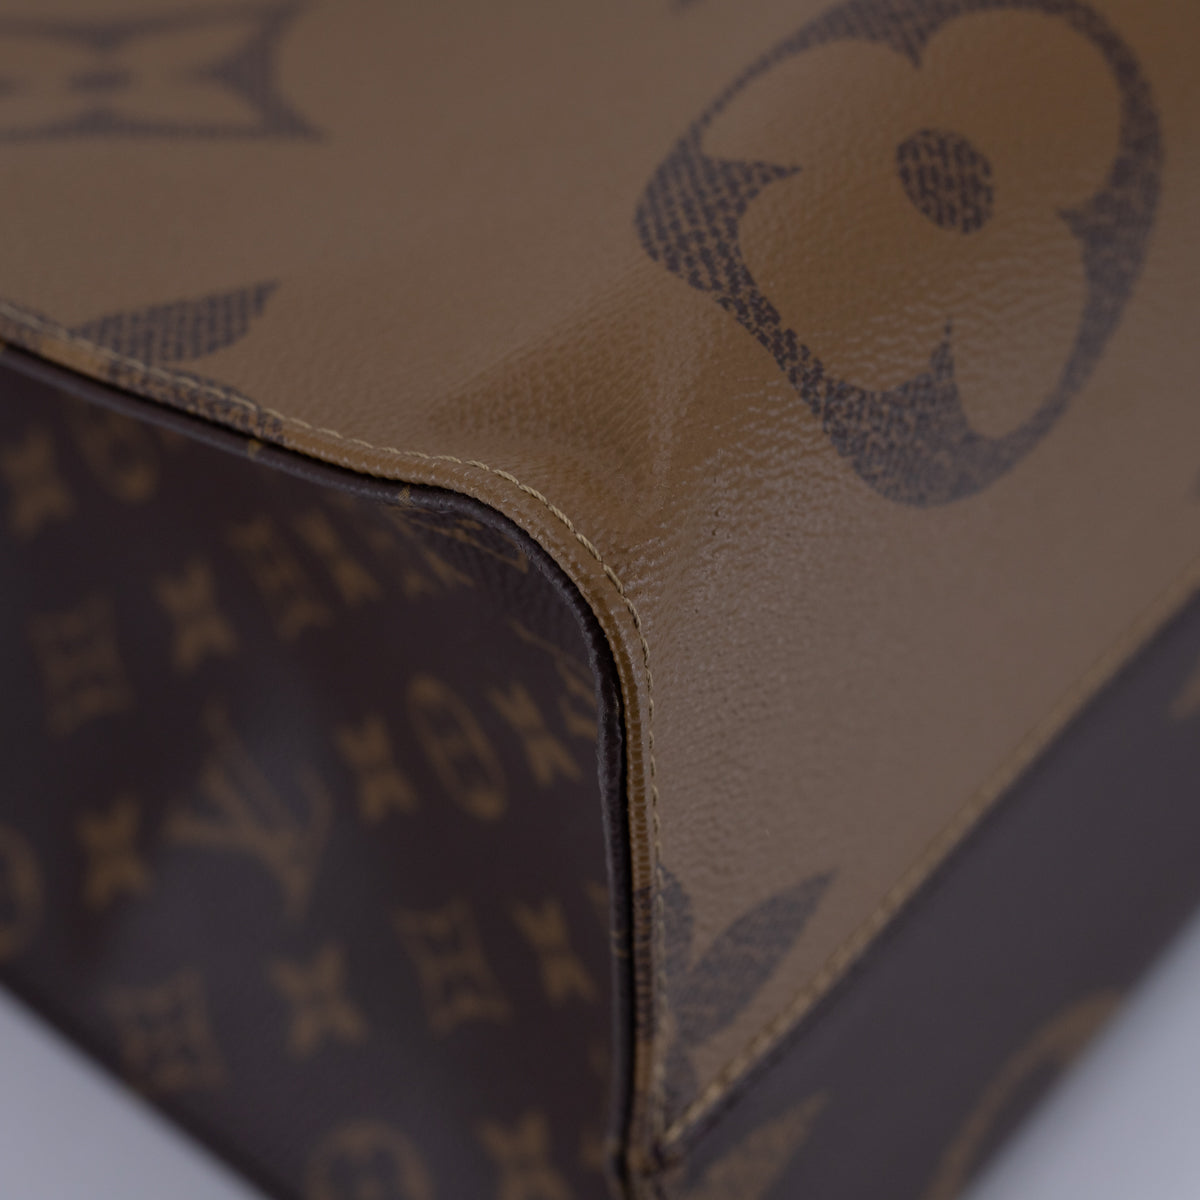 Louis Vuitton Go Shoulder bag 331010